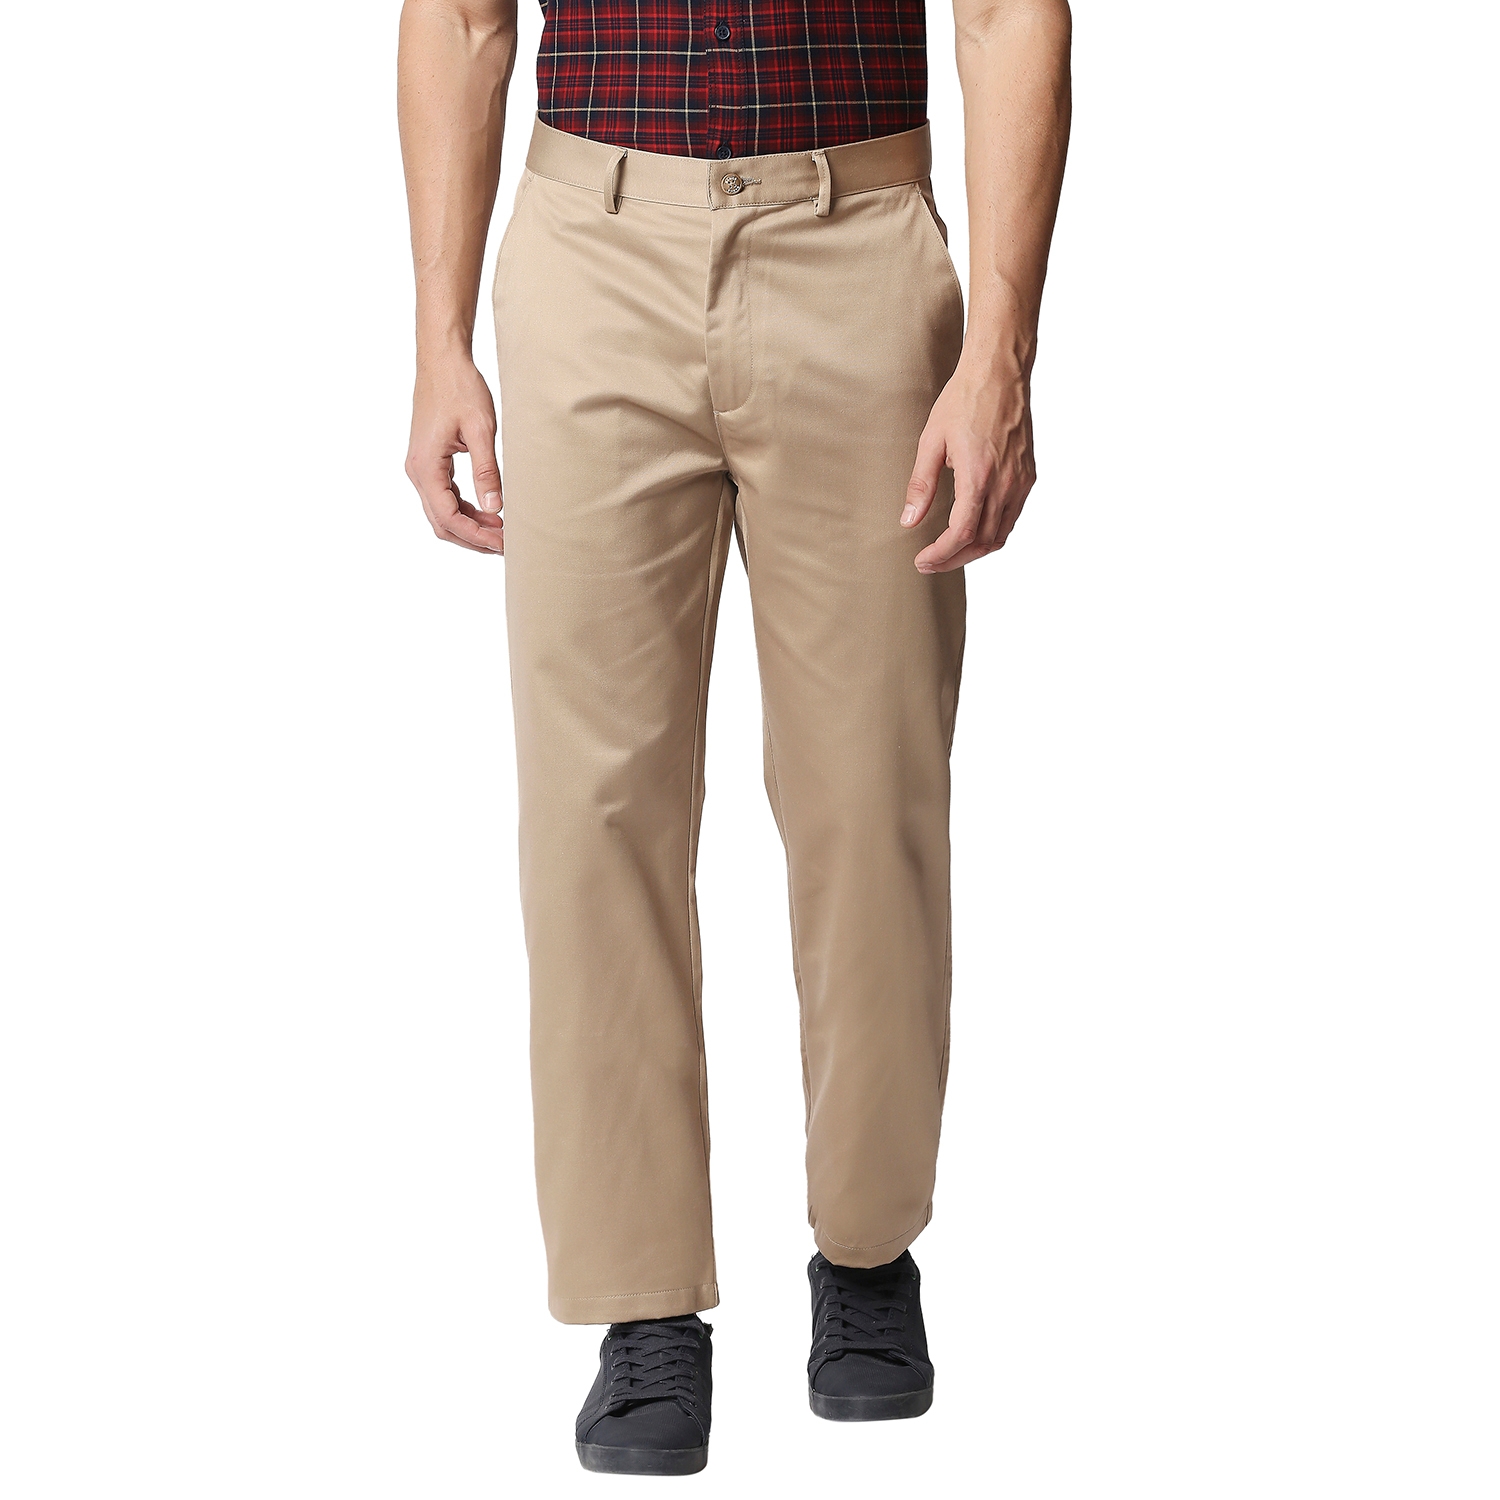 Basics | Basics Comfort Fit Khaki Satin Weave Poly Cotton Trousers